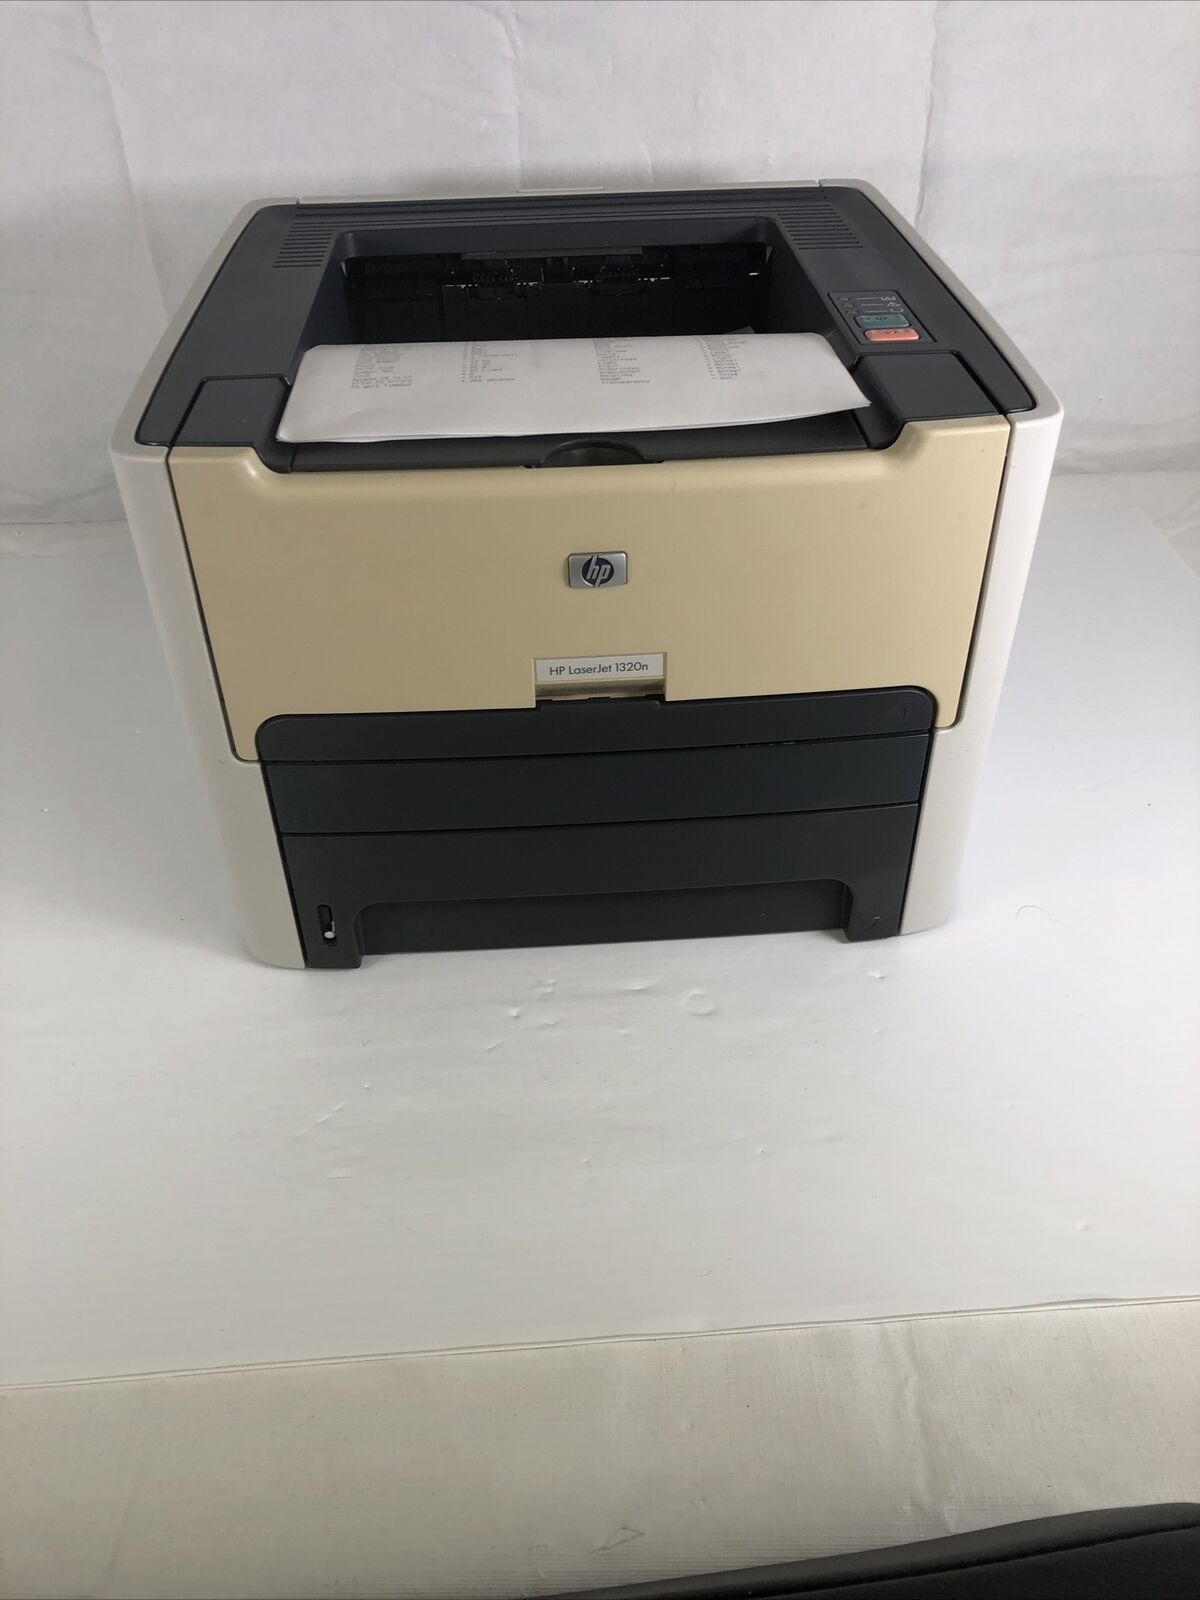 HP LaserJet 1320N Printer Workgroup Laser Printer I 32K Page Count I 100% Tonner